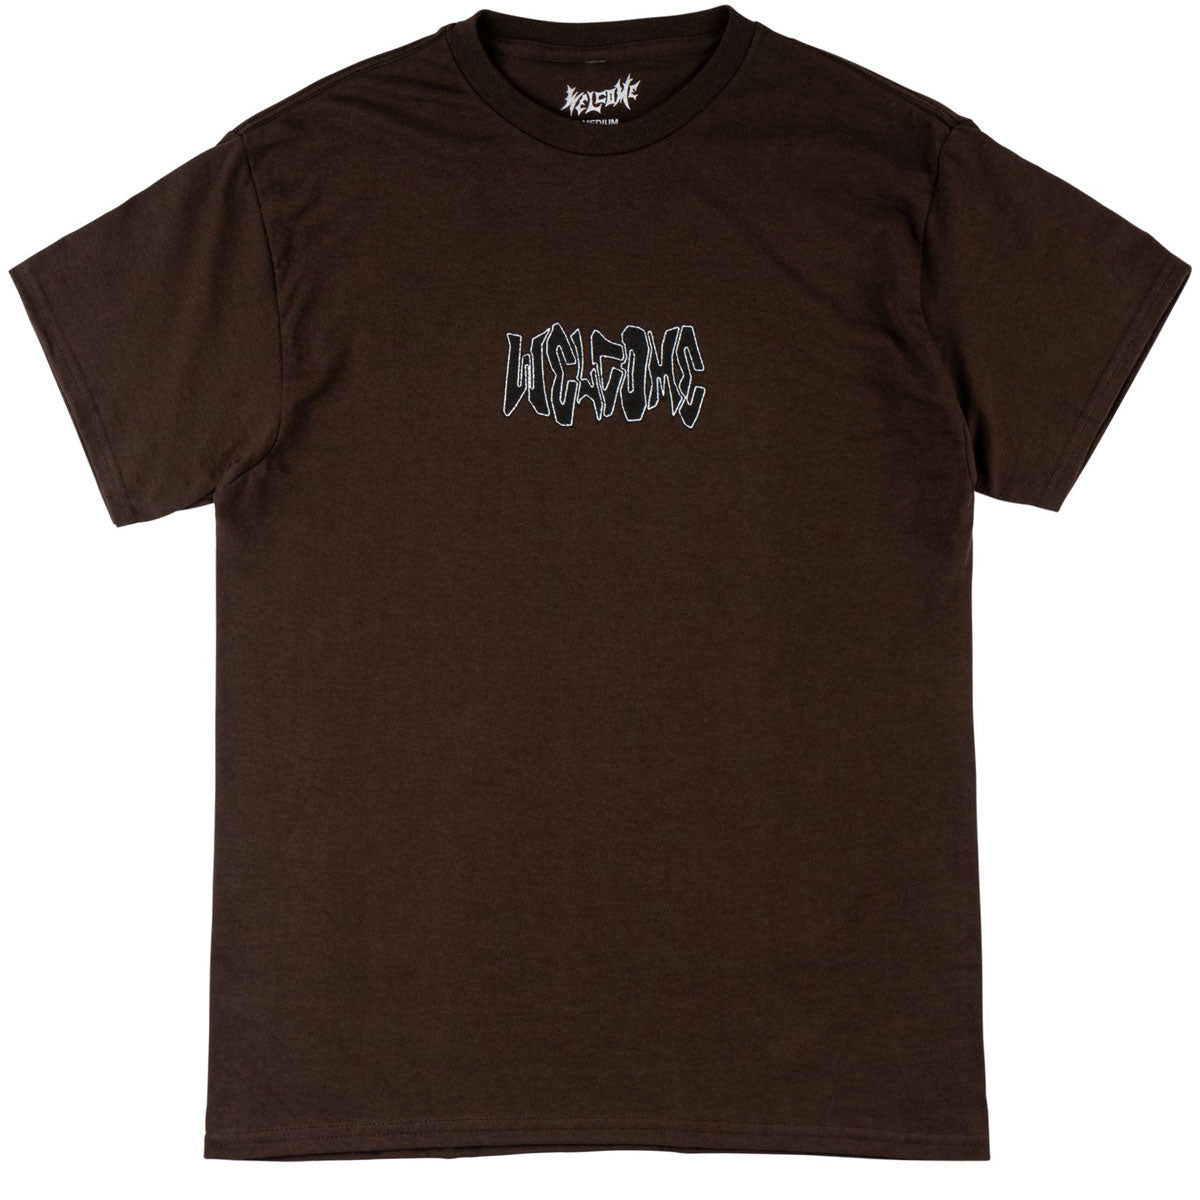 Welcome Nephilim T-Shirt - Dark Chocolate image 2